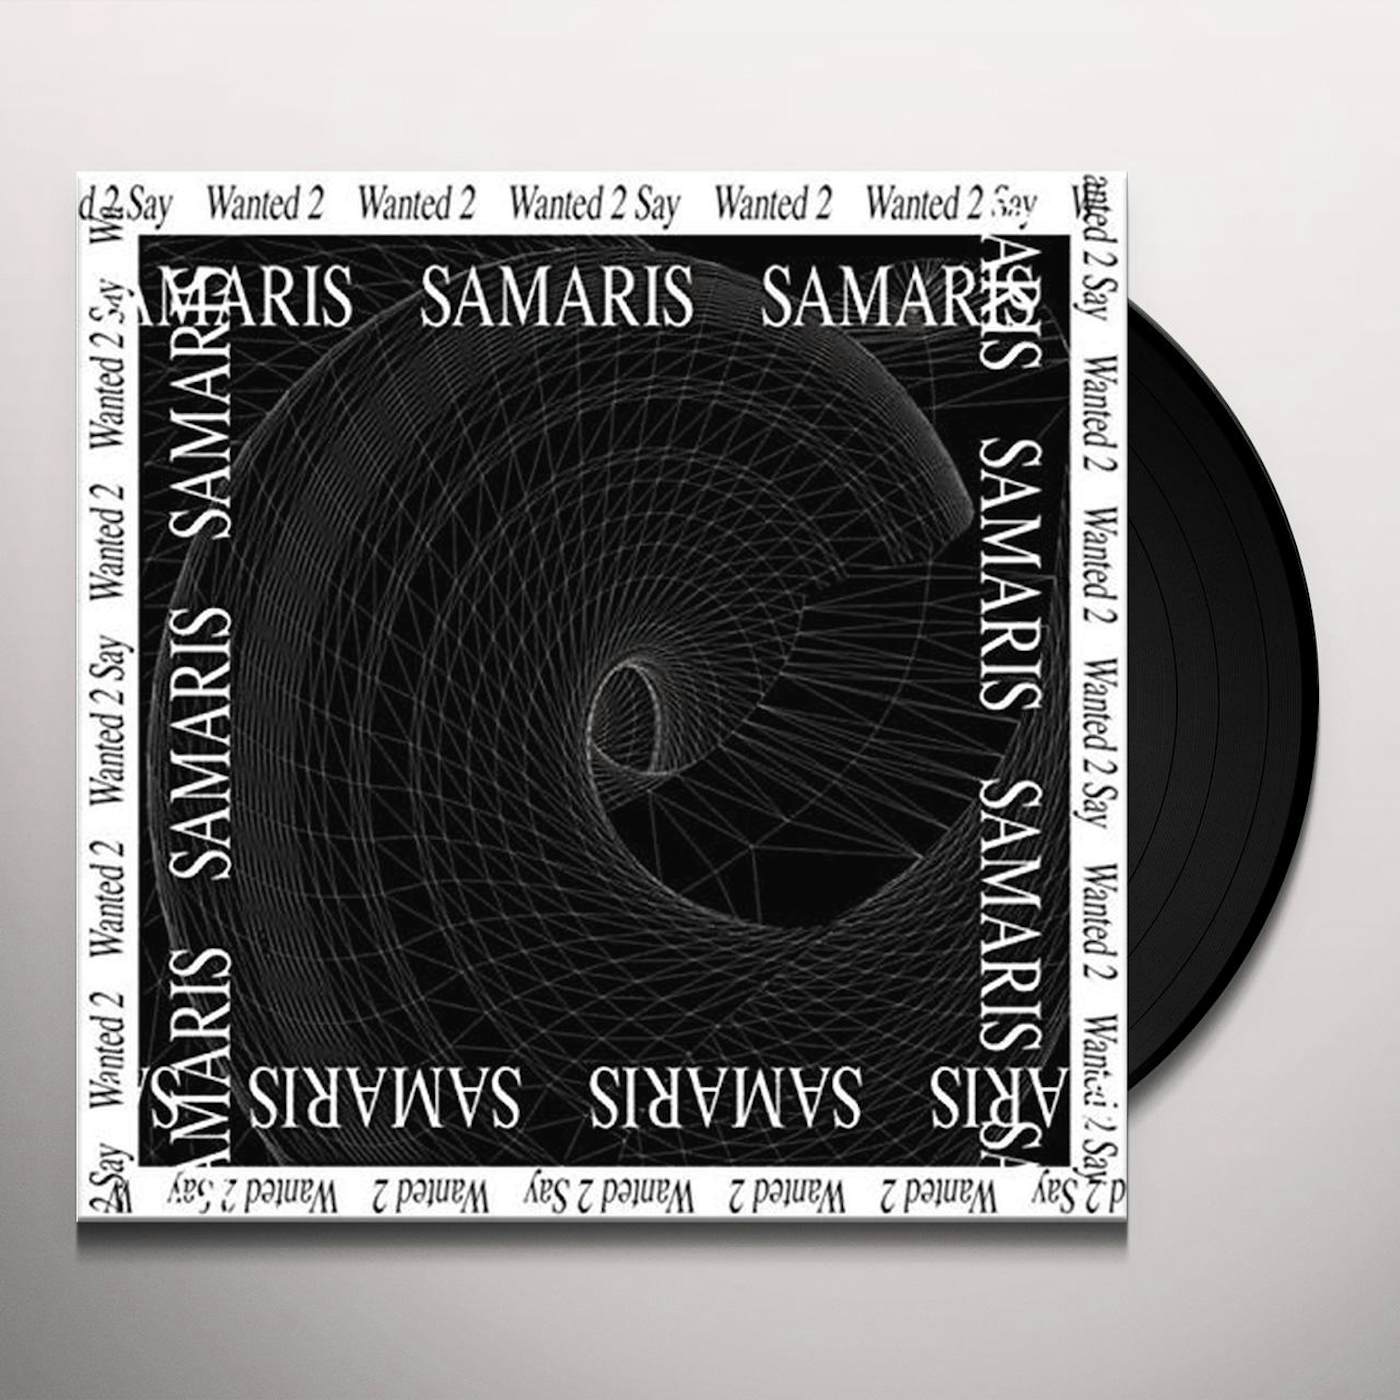 Samaris Wanted 2 say Vinyl Record